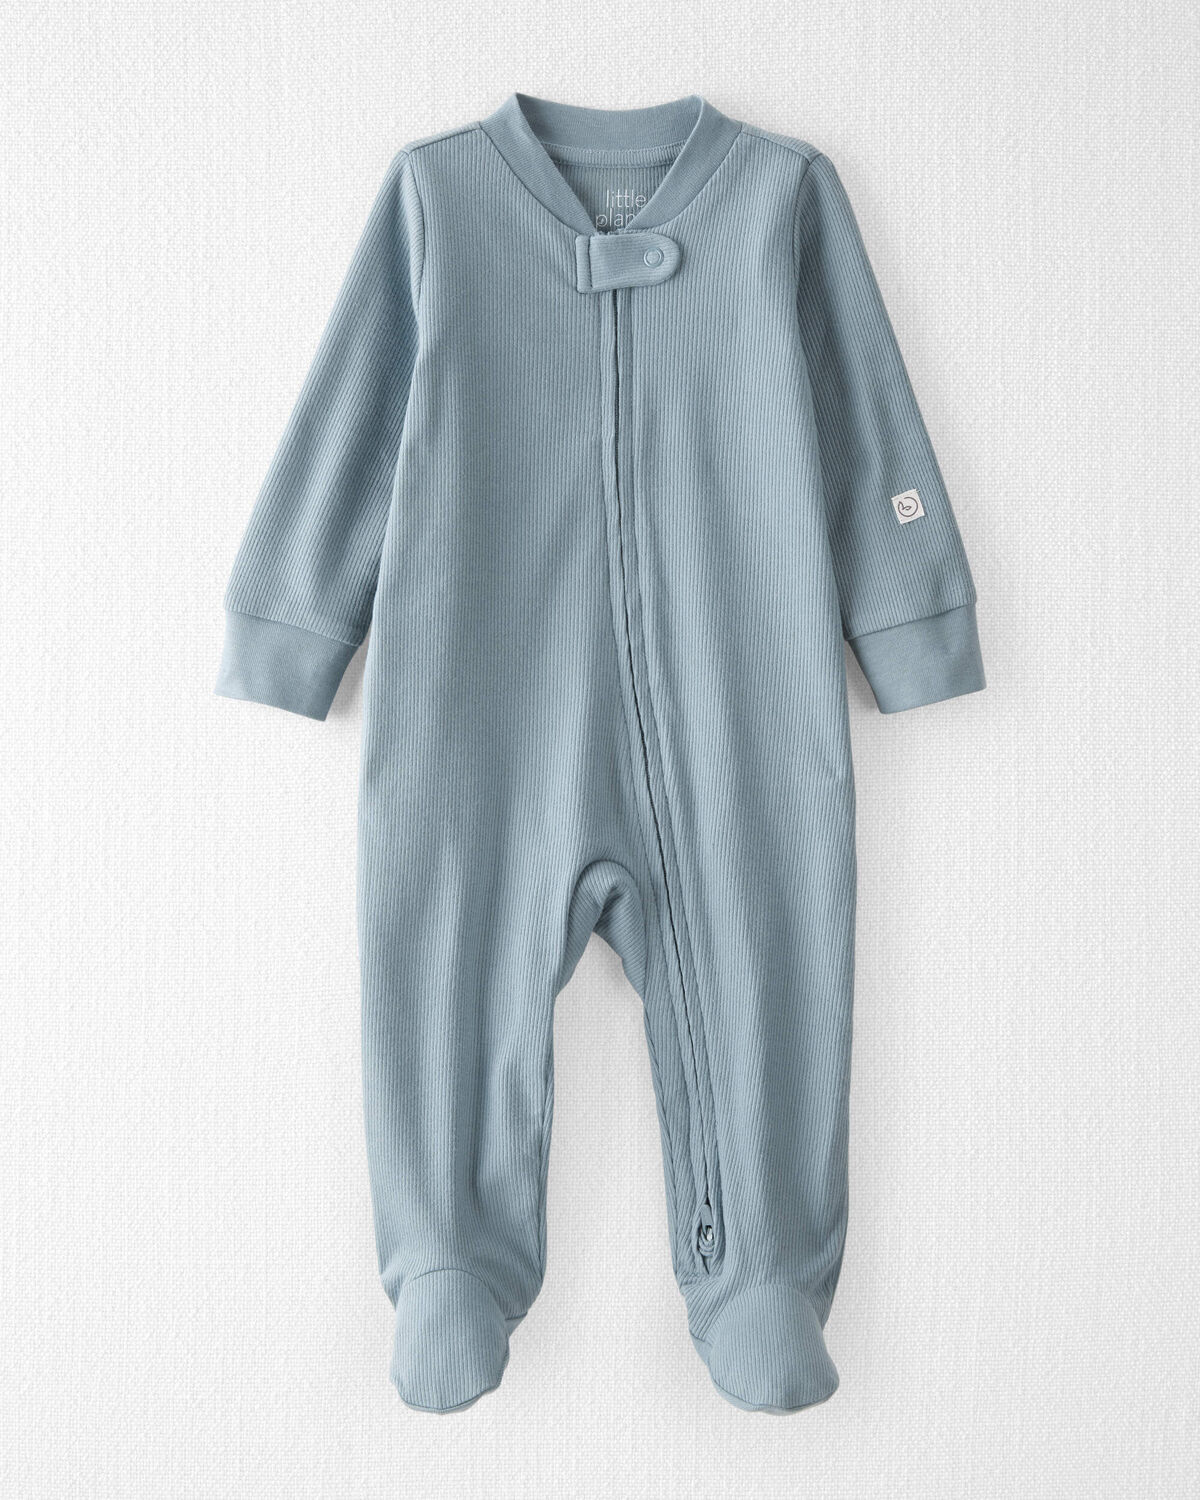 Baby Organic Cotton Sleep & Play Pajamas in Blue